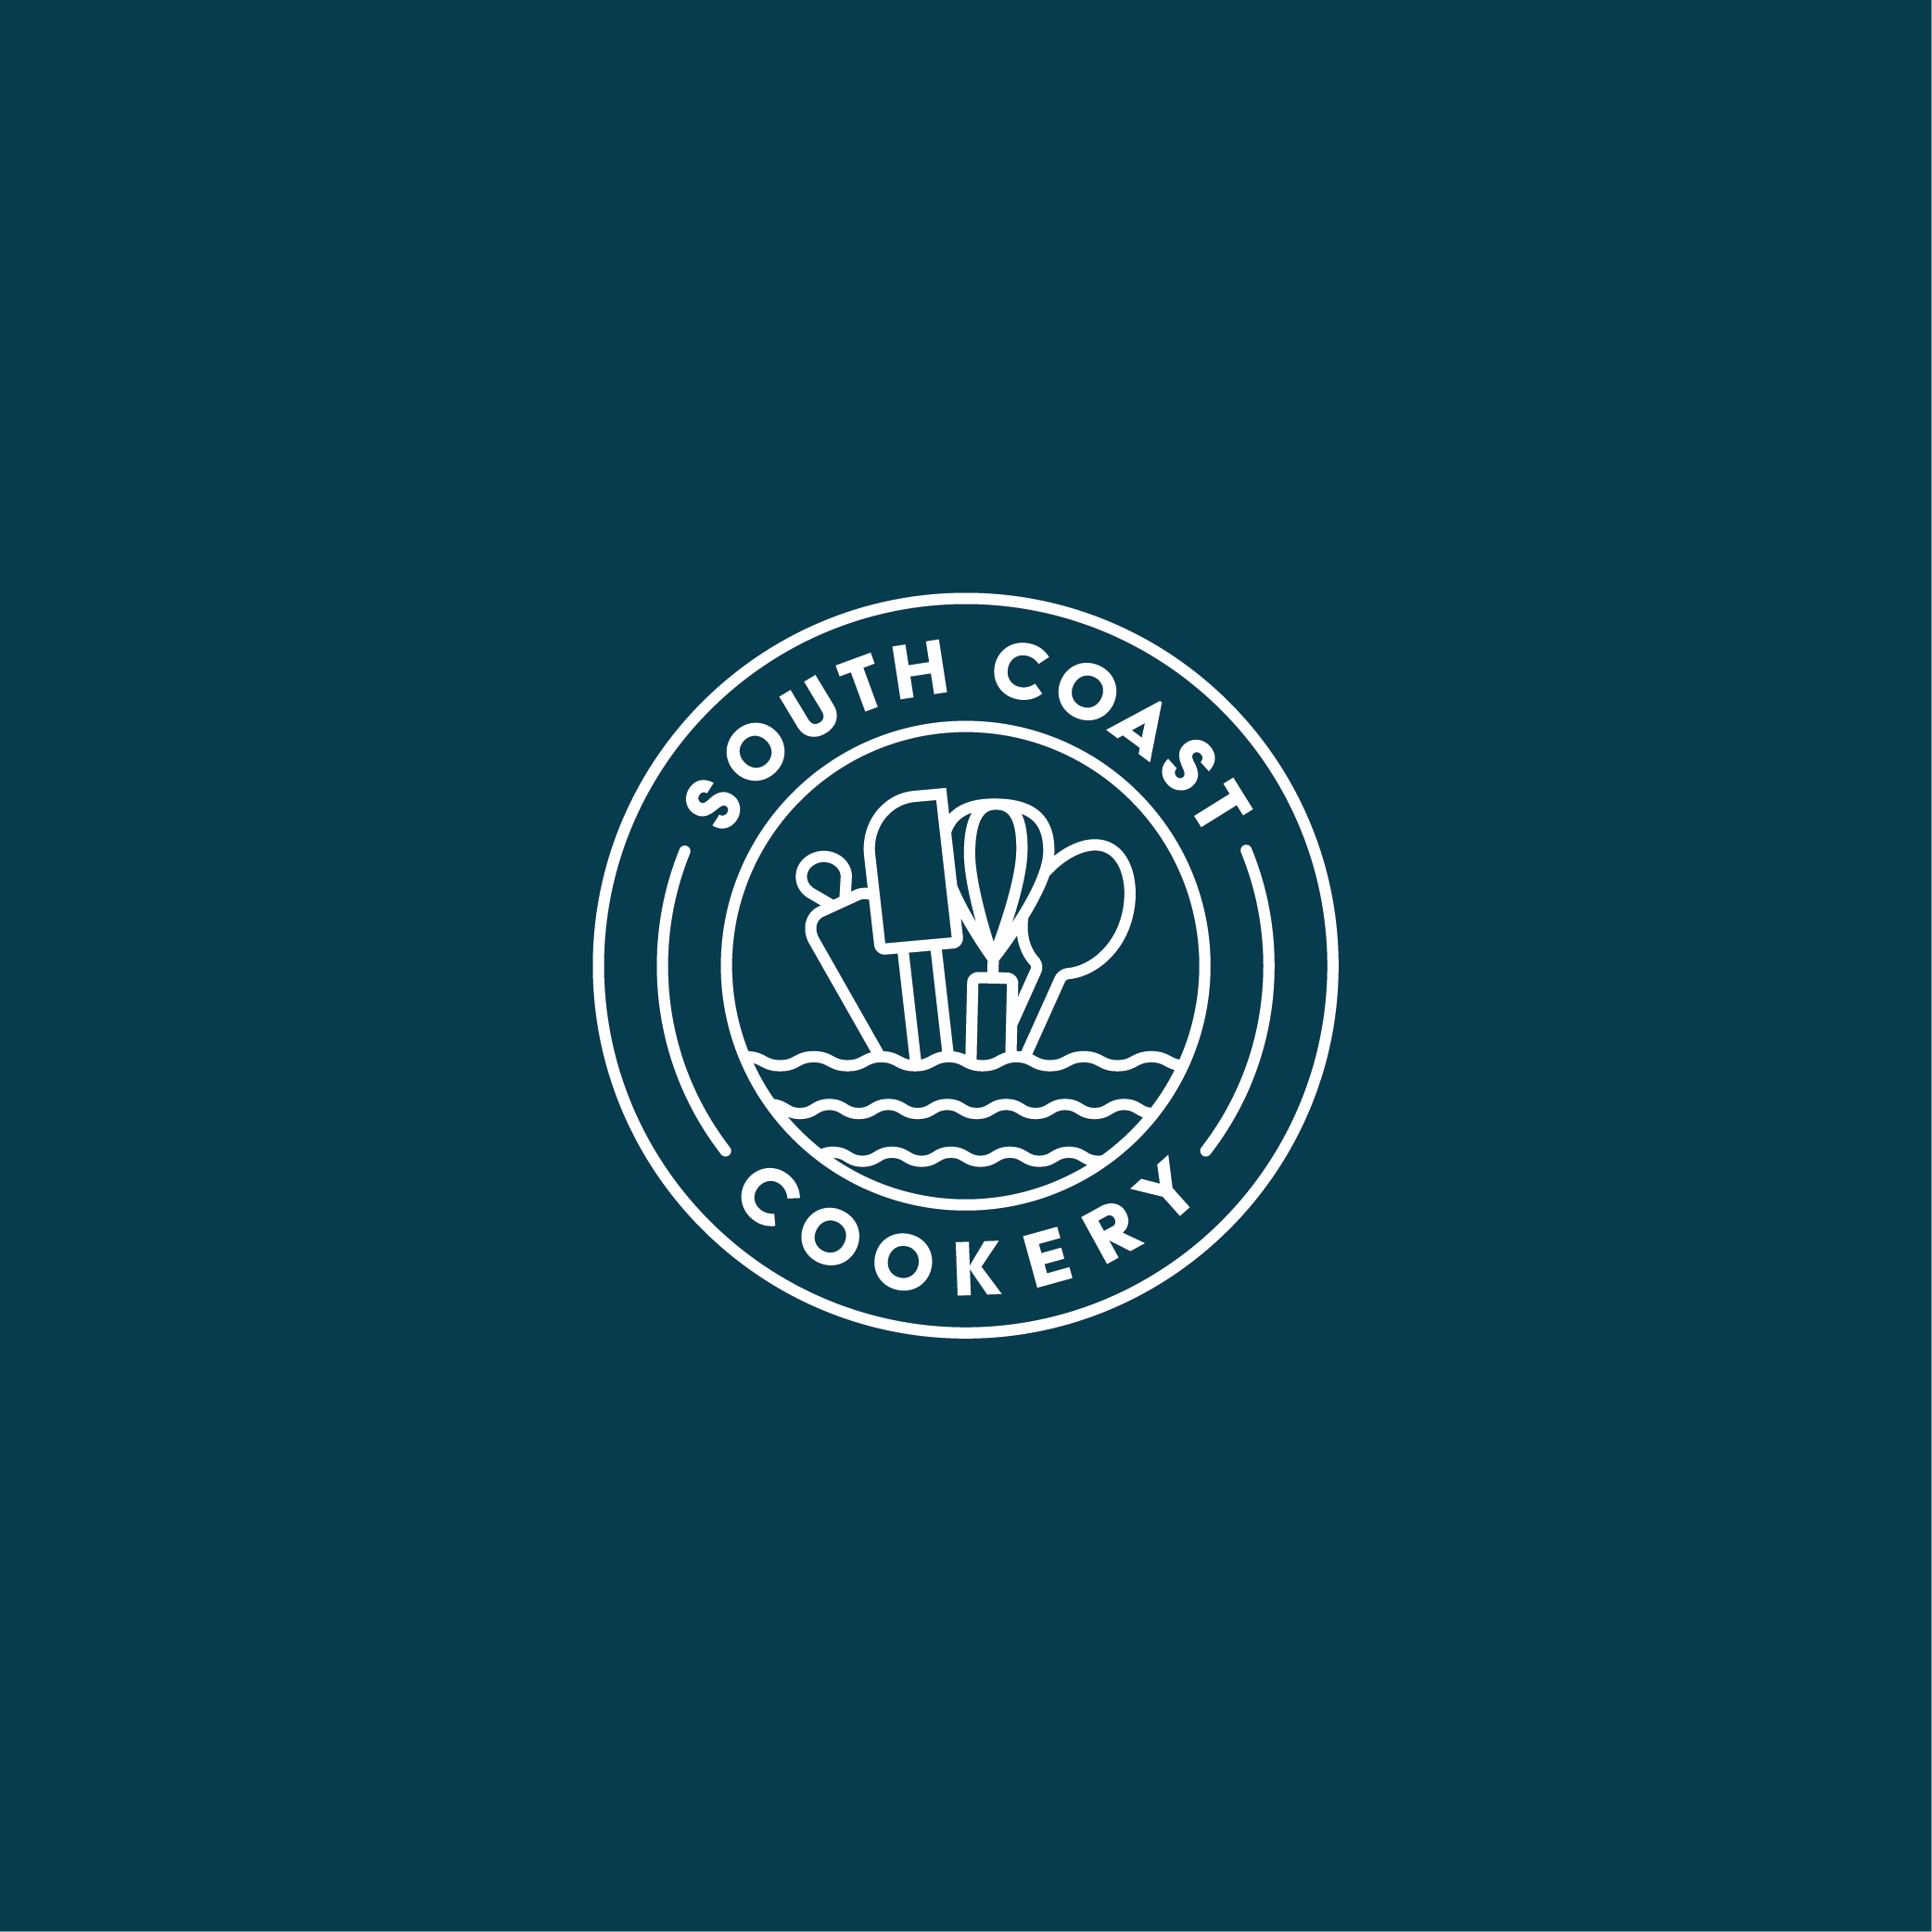 South Coast Cookery Logo Design - Apollo Creative Co